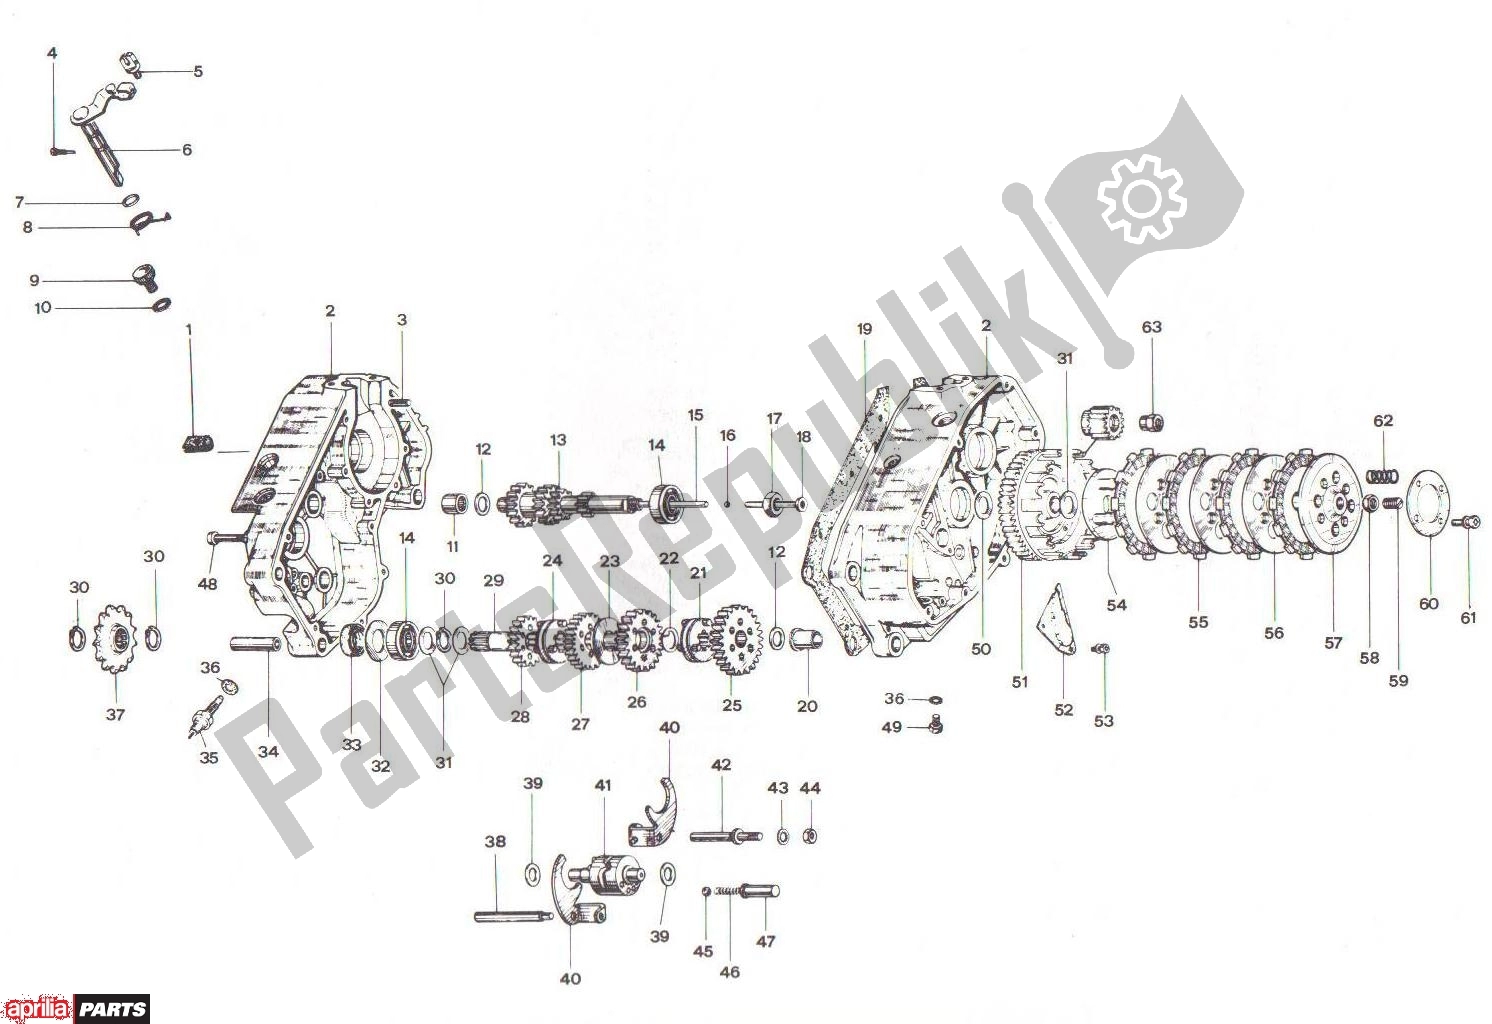 Alle Teile für das Crankcase Clutch Transmission Basamento Frizione Cambio des Aprilia RV3/4 700 50 1986 - 1992